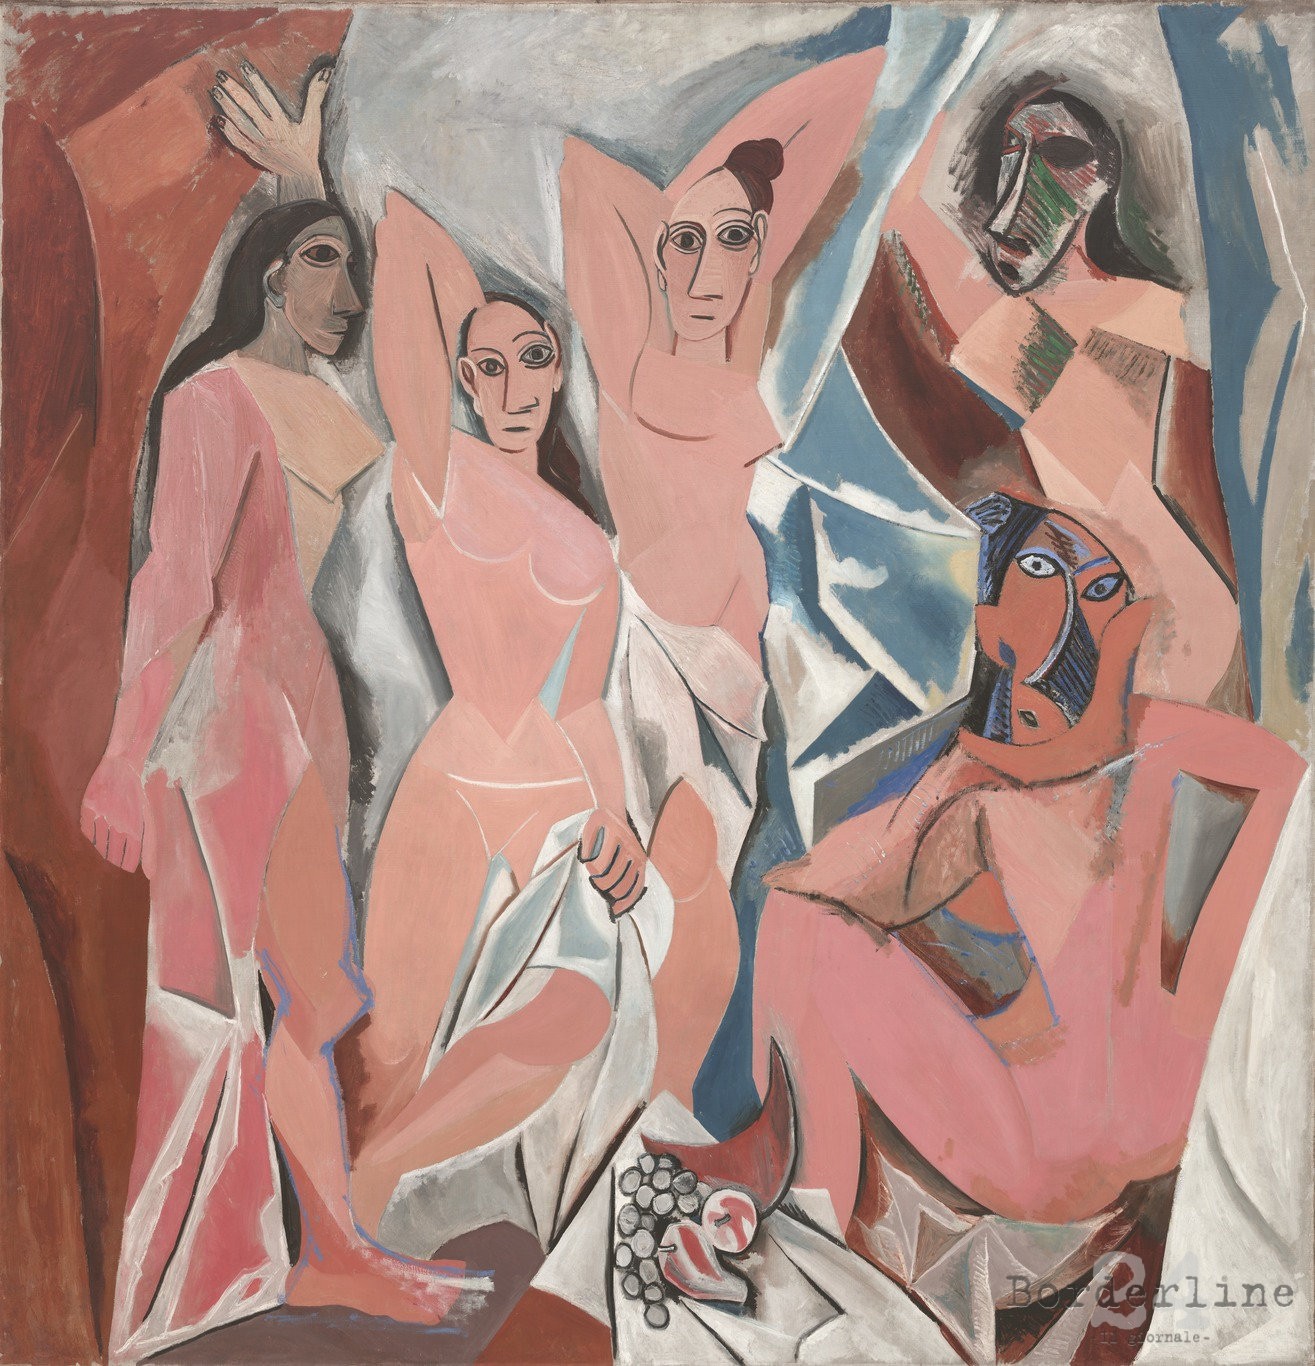 Pablo Picasso, Les demoiselles d'Avignon, (1907) Moma di New York